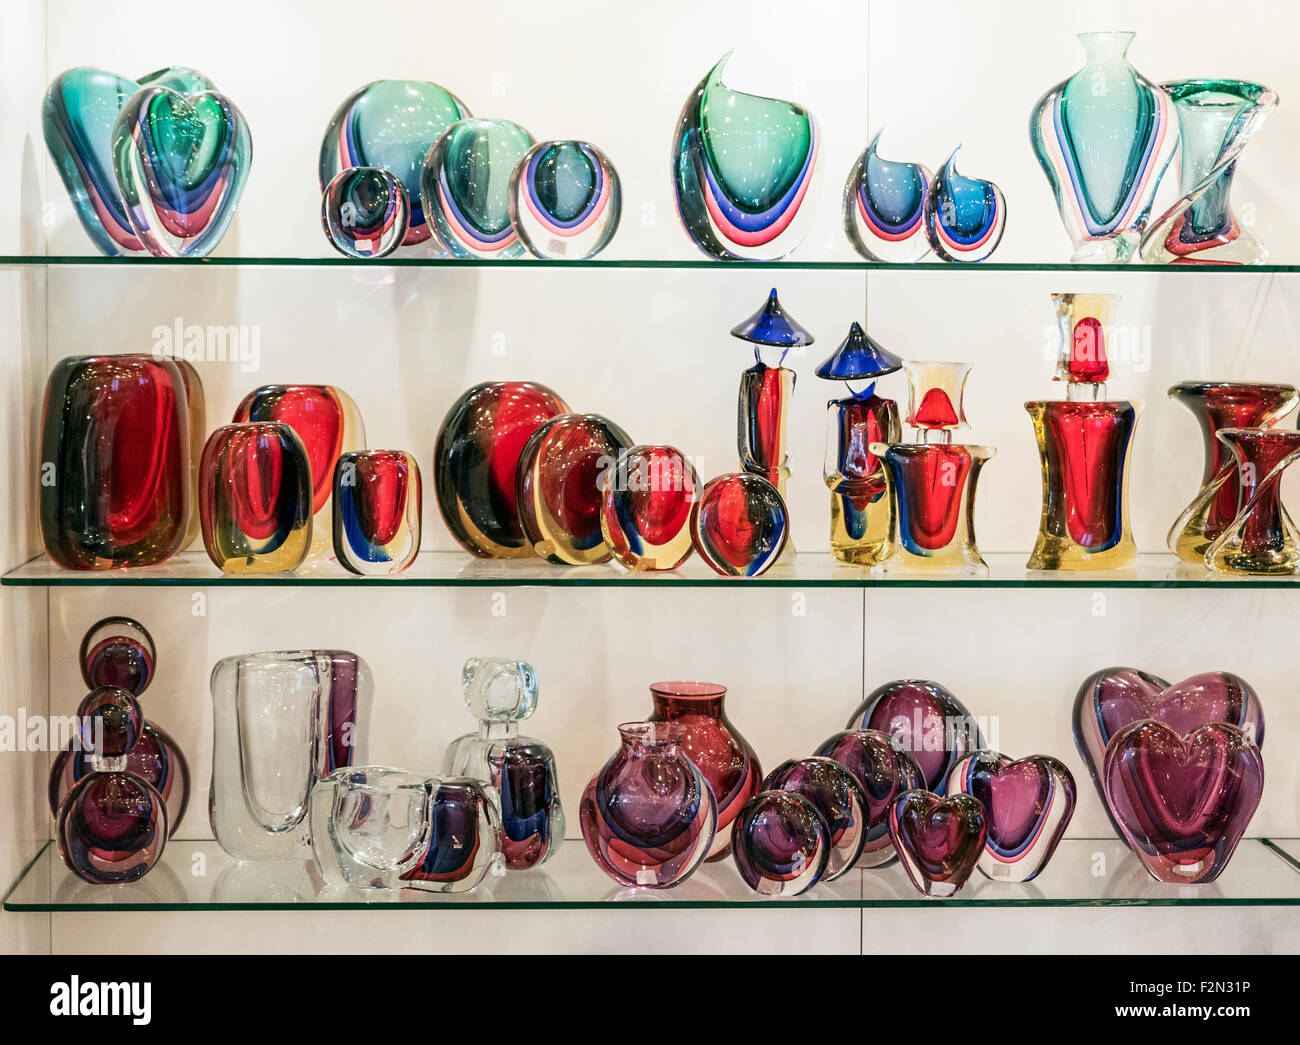 Galerie en verre vénitien sur l'île de Murano, en Italie. Célèbre pour ses nombreux fours et fabriqué à la main en verre. Banque D'Images